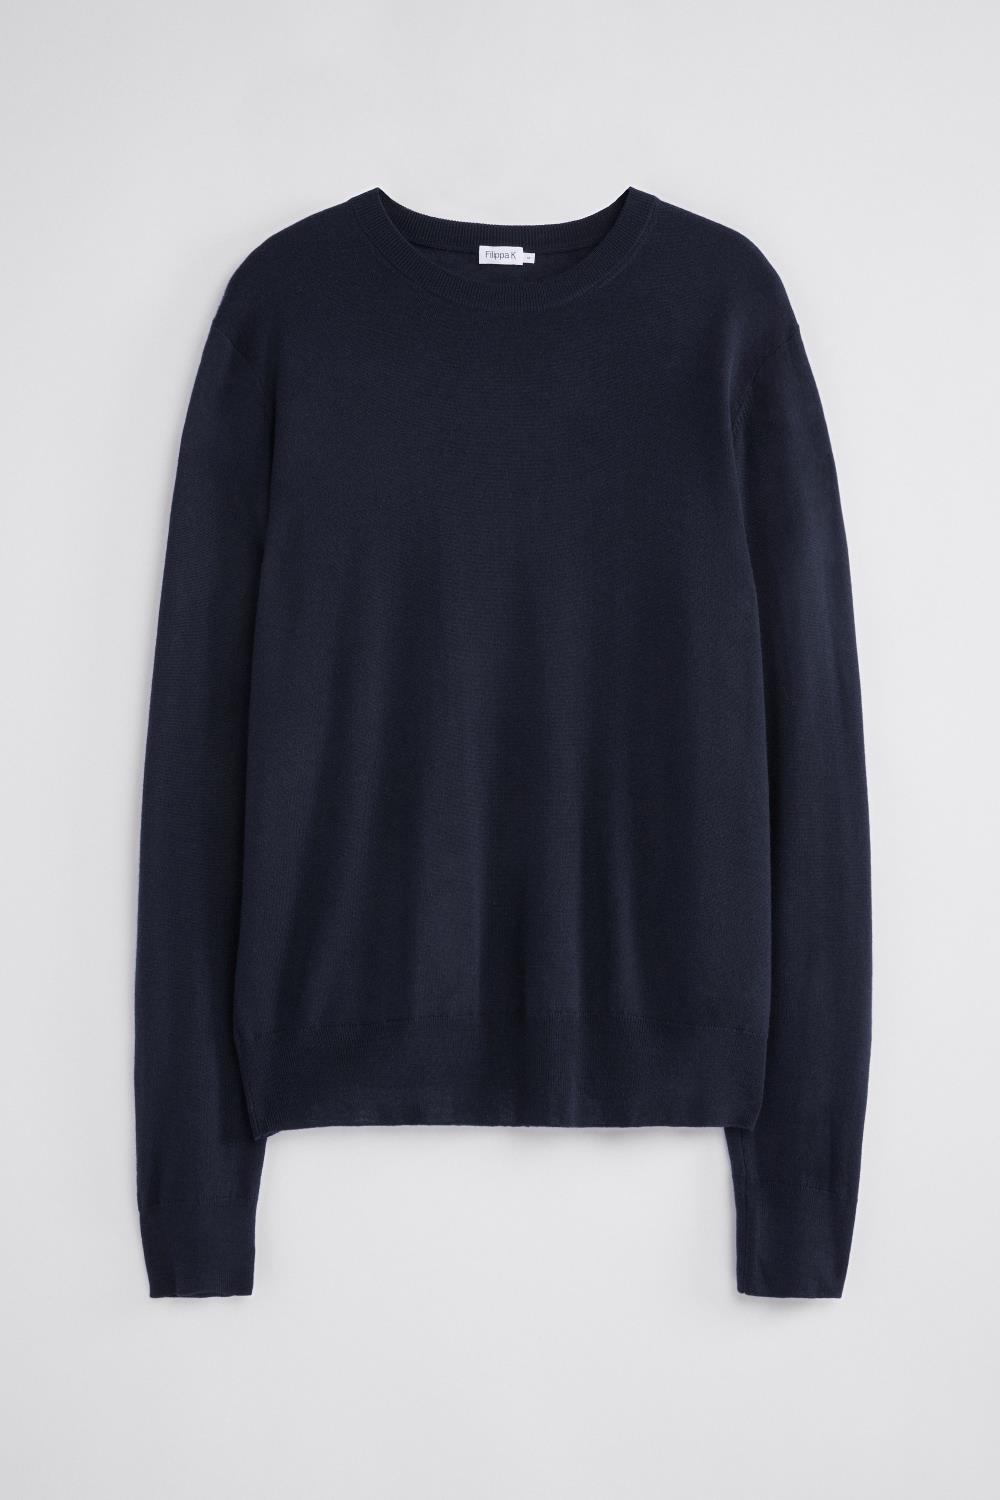 M. merino sweater 25965